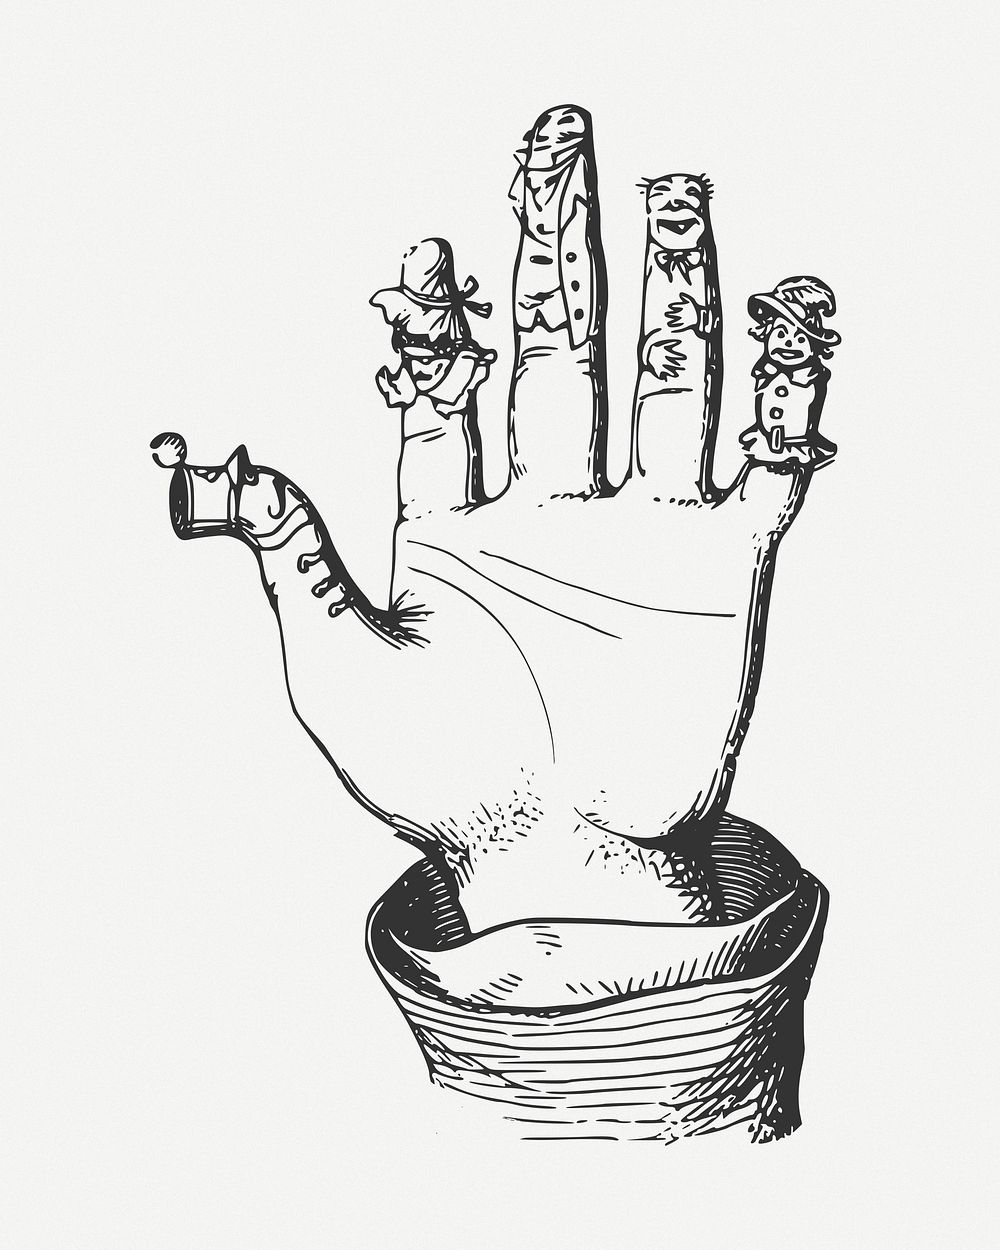 Finger puppet clip art psd. Free public domain CC0 image.